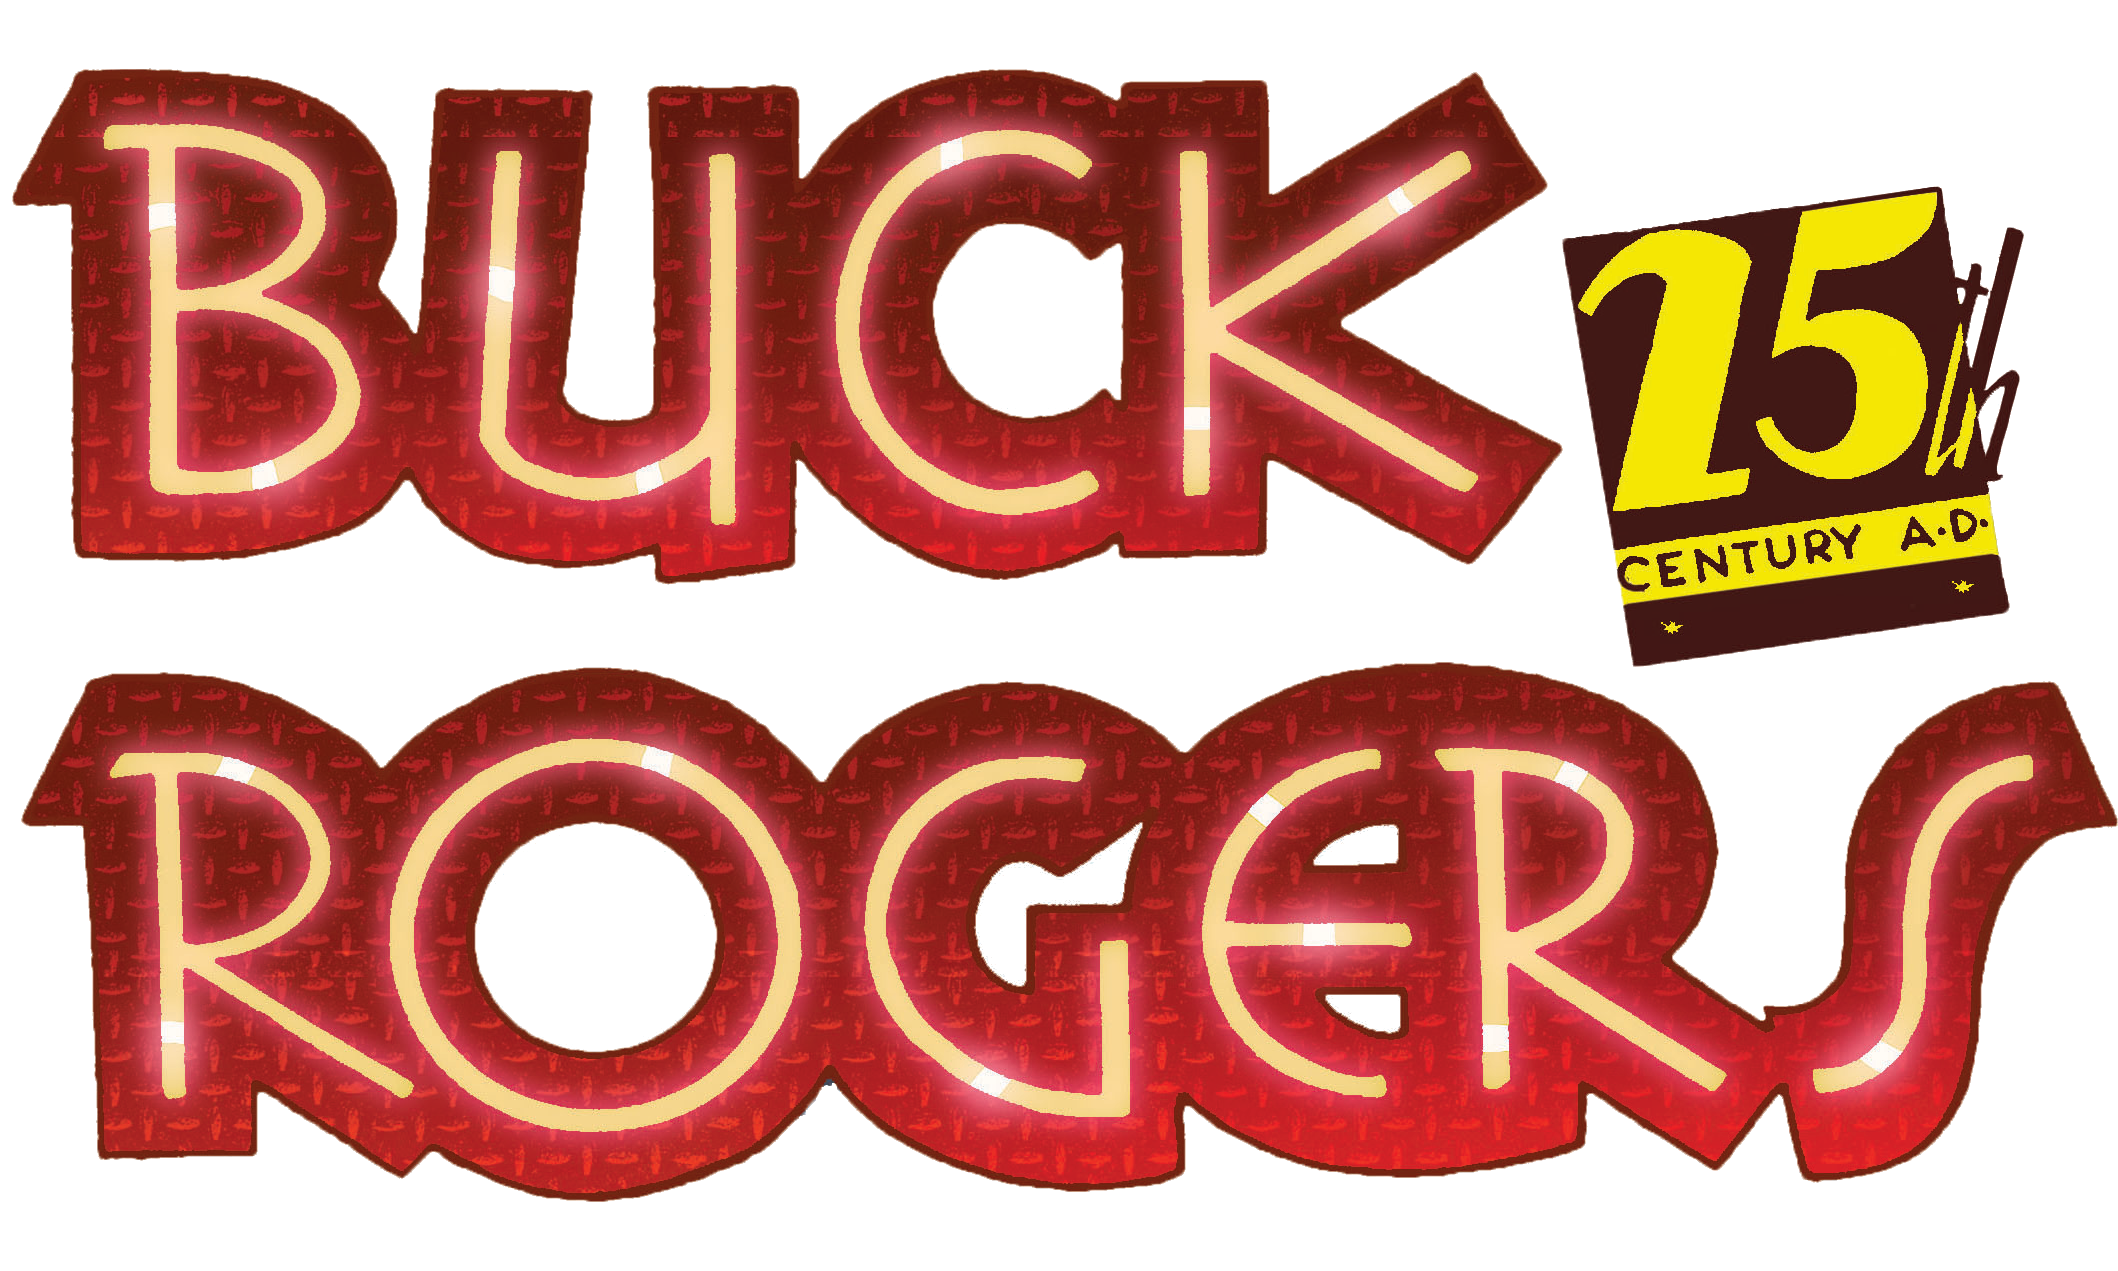 [Buck Rogers]